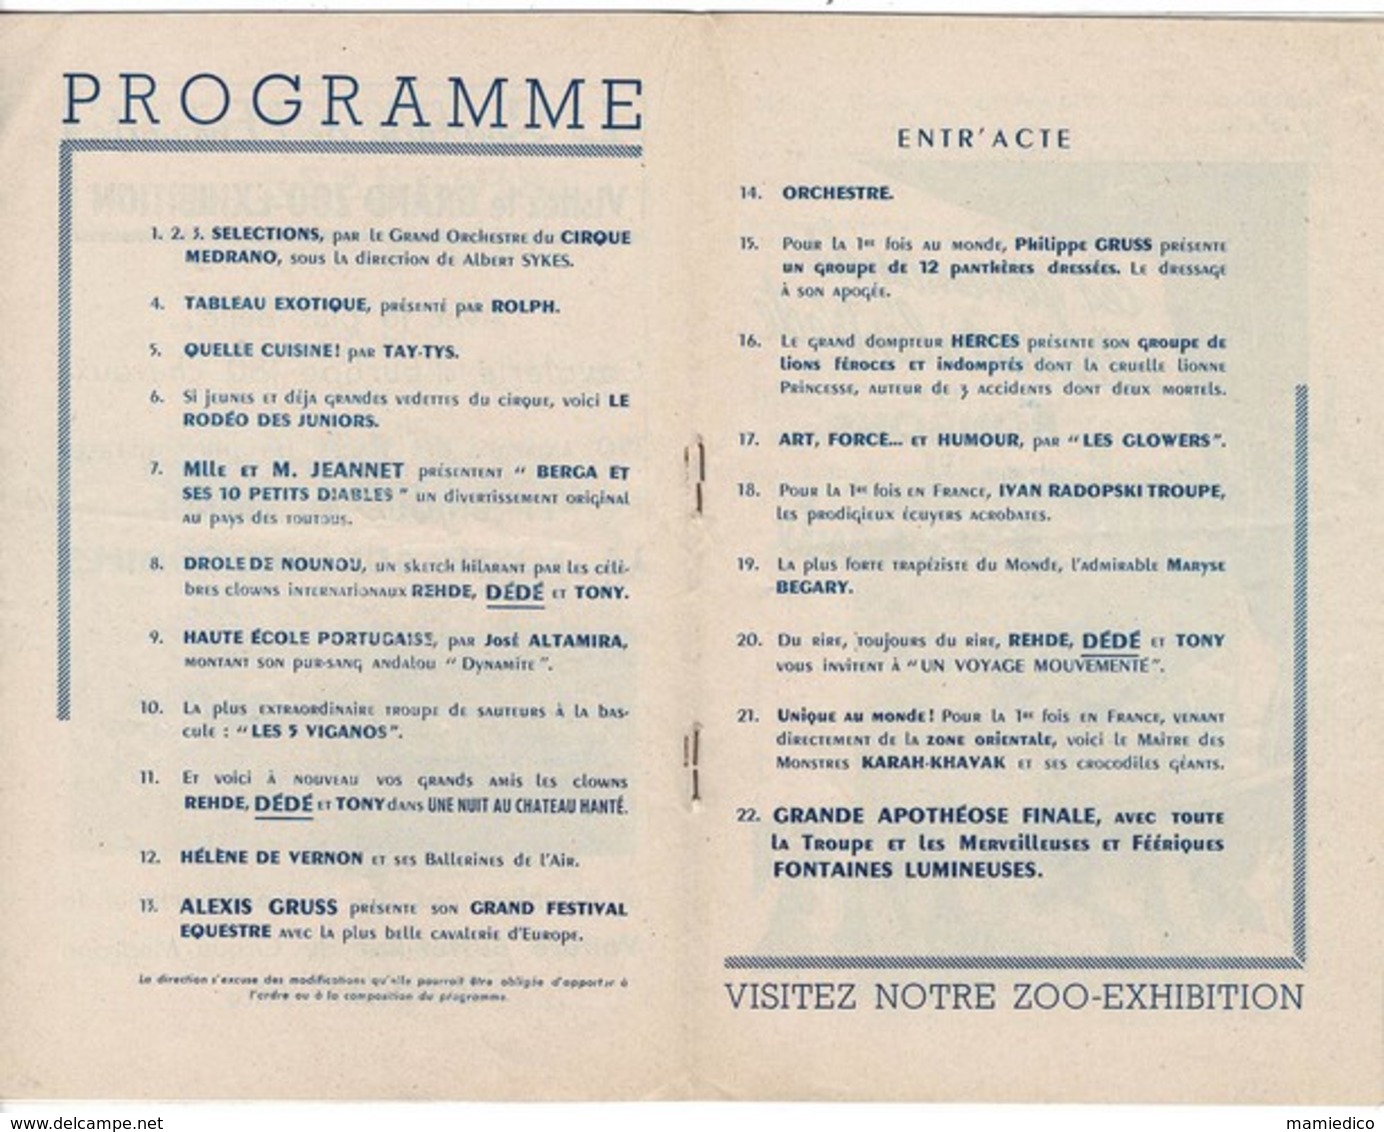 1956 Programme du CIRQUE MEDRANO , LE CIRQUE DE PARIS pour la 1ère fois en tournée Livret de 32 pages